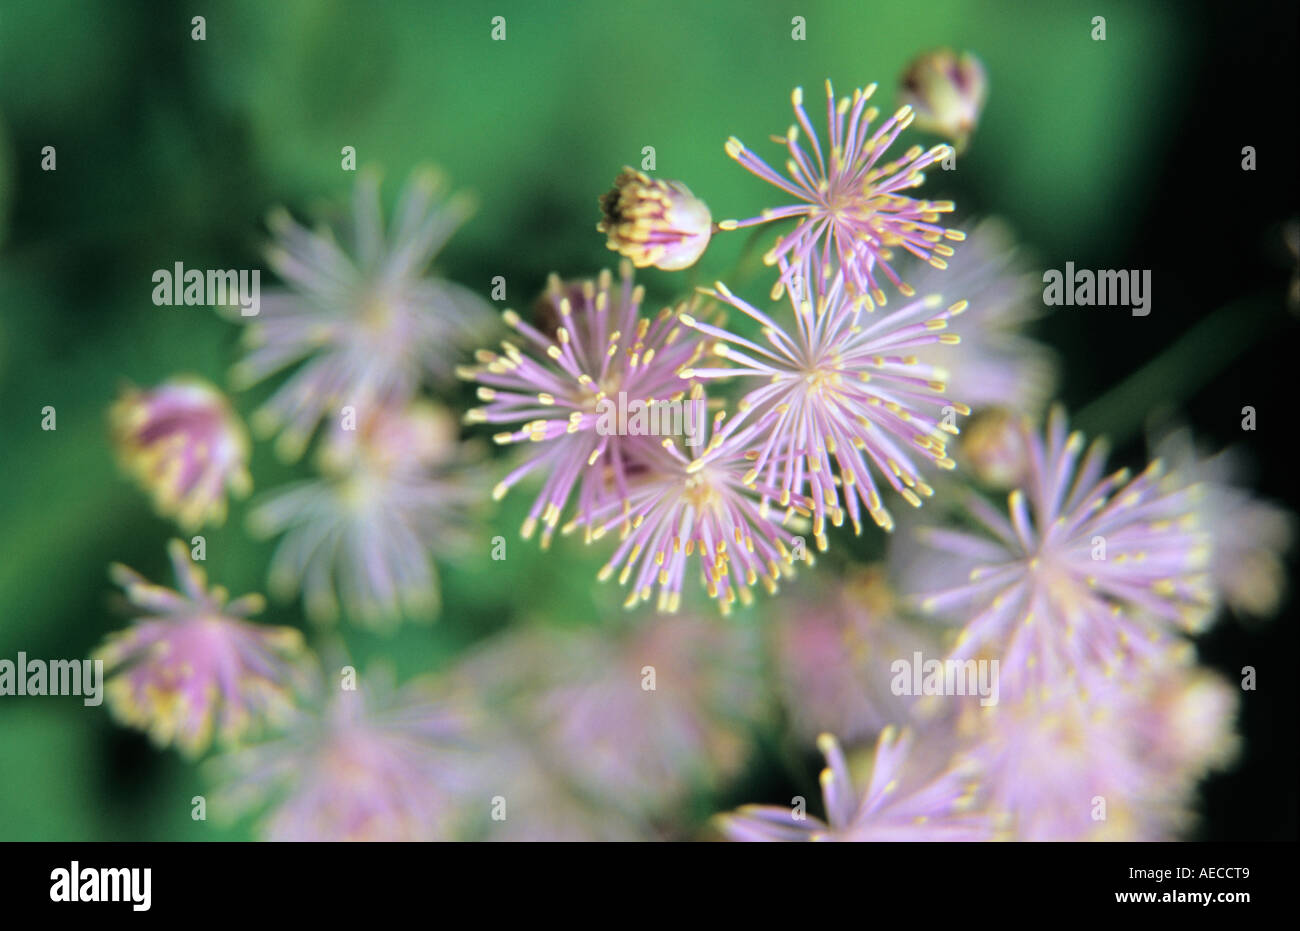 French Meadow rue Thalictrum aquilegifolium flowers in close-up Stock Photo